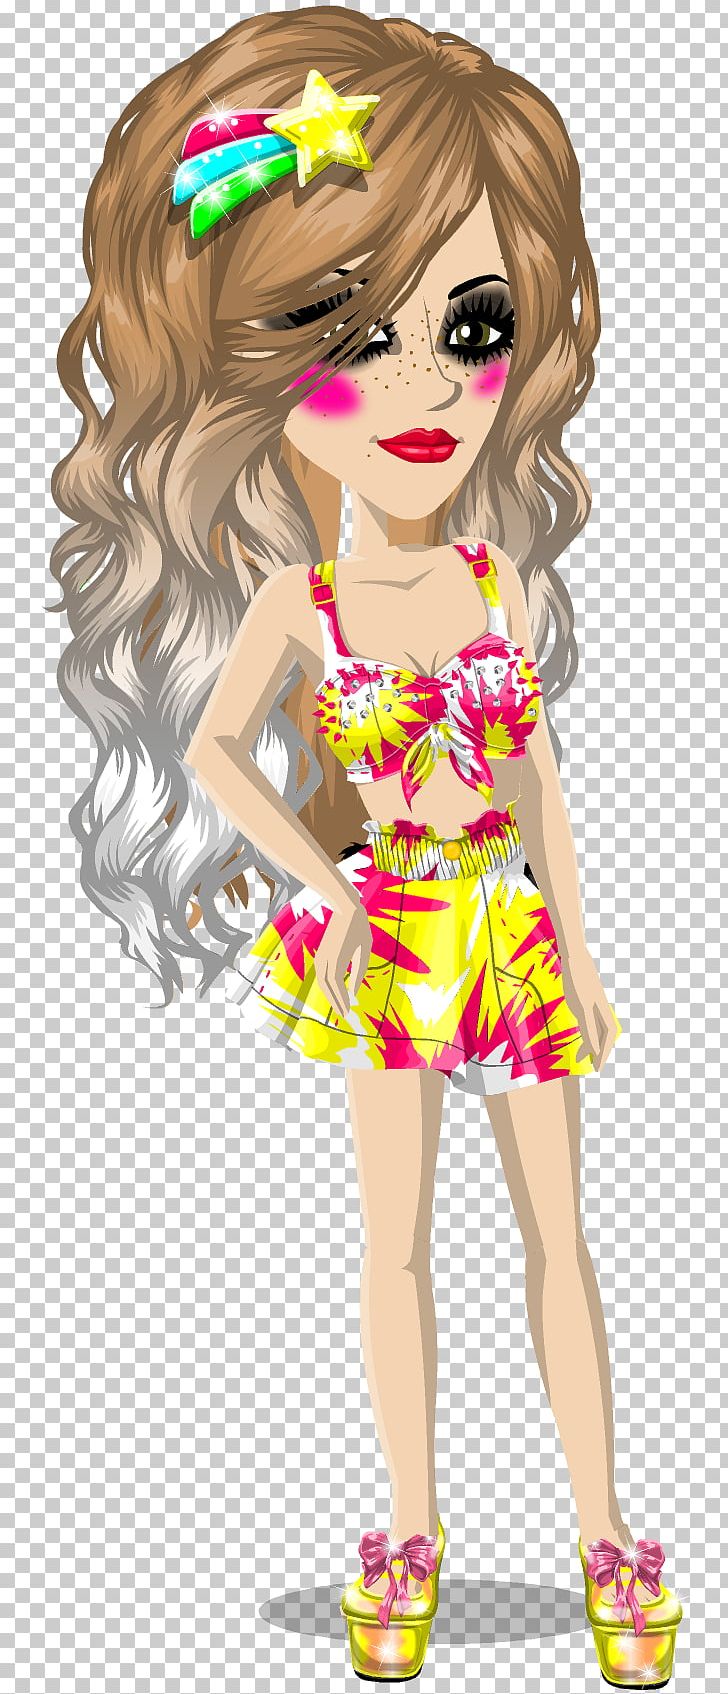 MovieStarPlanet Barbie Video Game Brown Hair PNG, Clipart, Art, Barbie, Blog, Brown Hair, Cartoon Free PNG Download